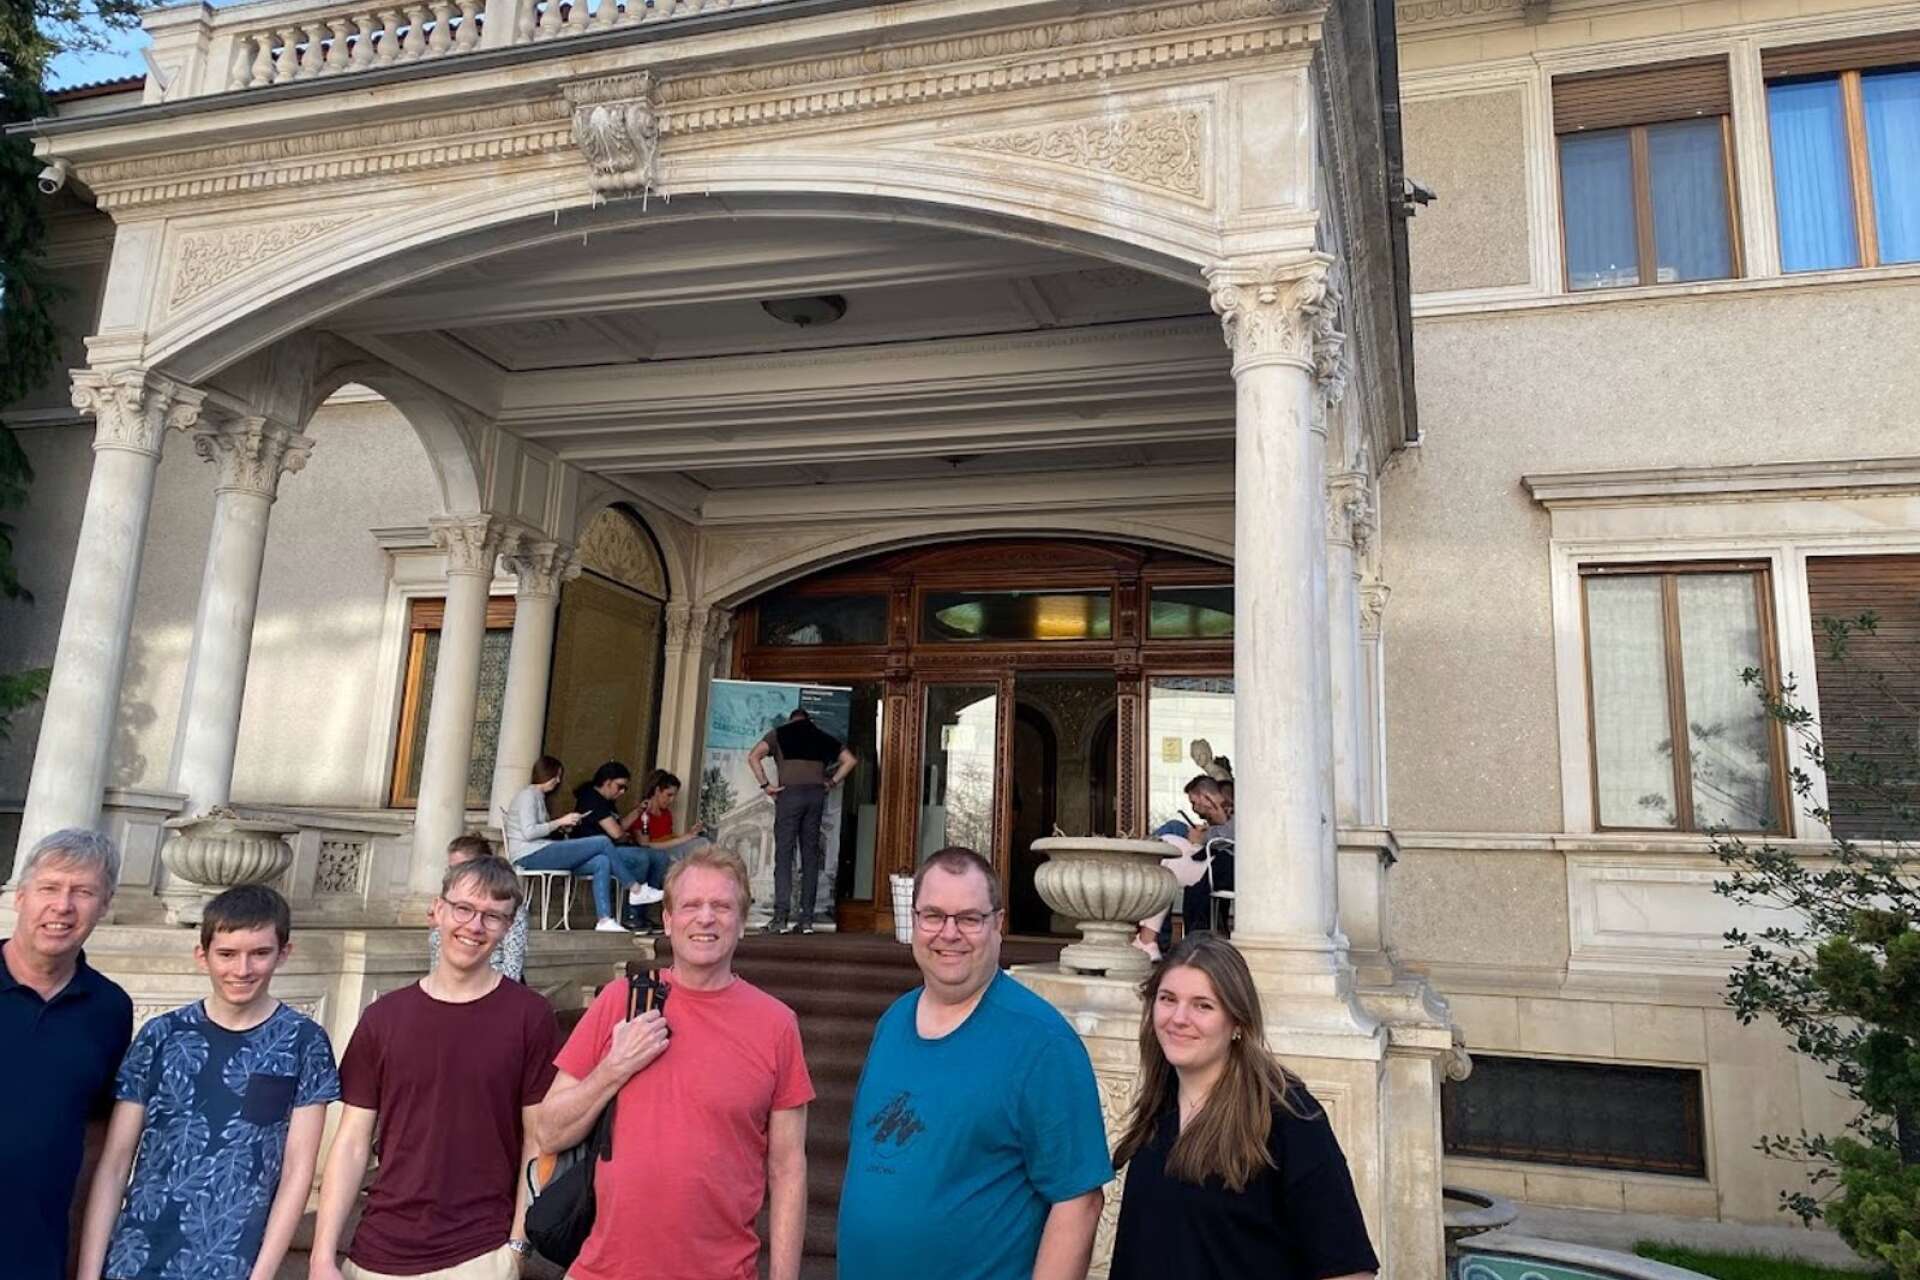 Anders, Isak, Hannes, Lars, Martin och Hilda tog en taxi till palatset där Rumäniens diktator åren 1965-1989 Nicolae Ceausescu (1918-1989) bodde med sin familj.